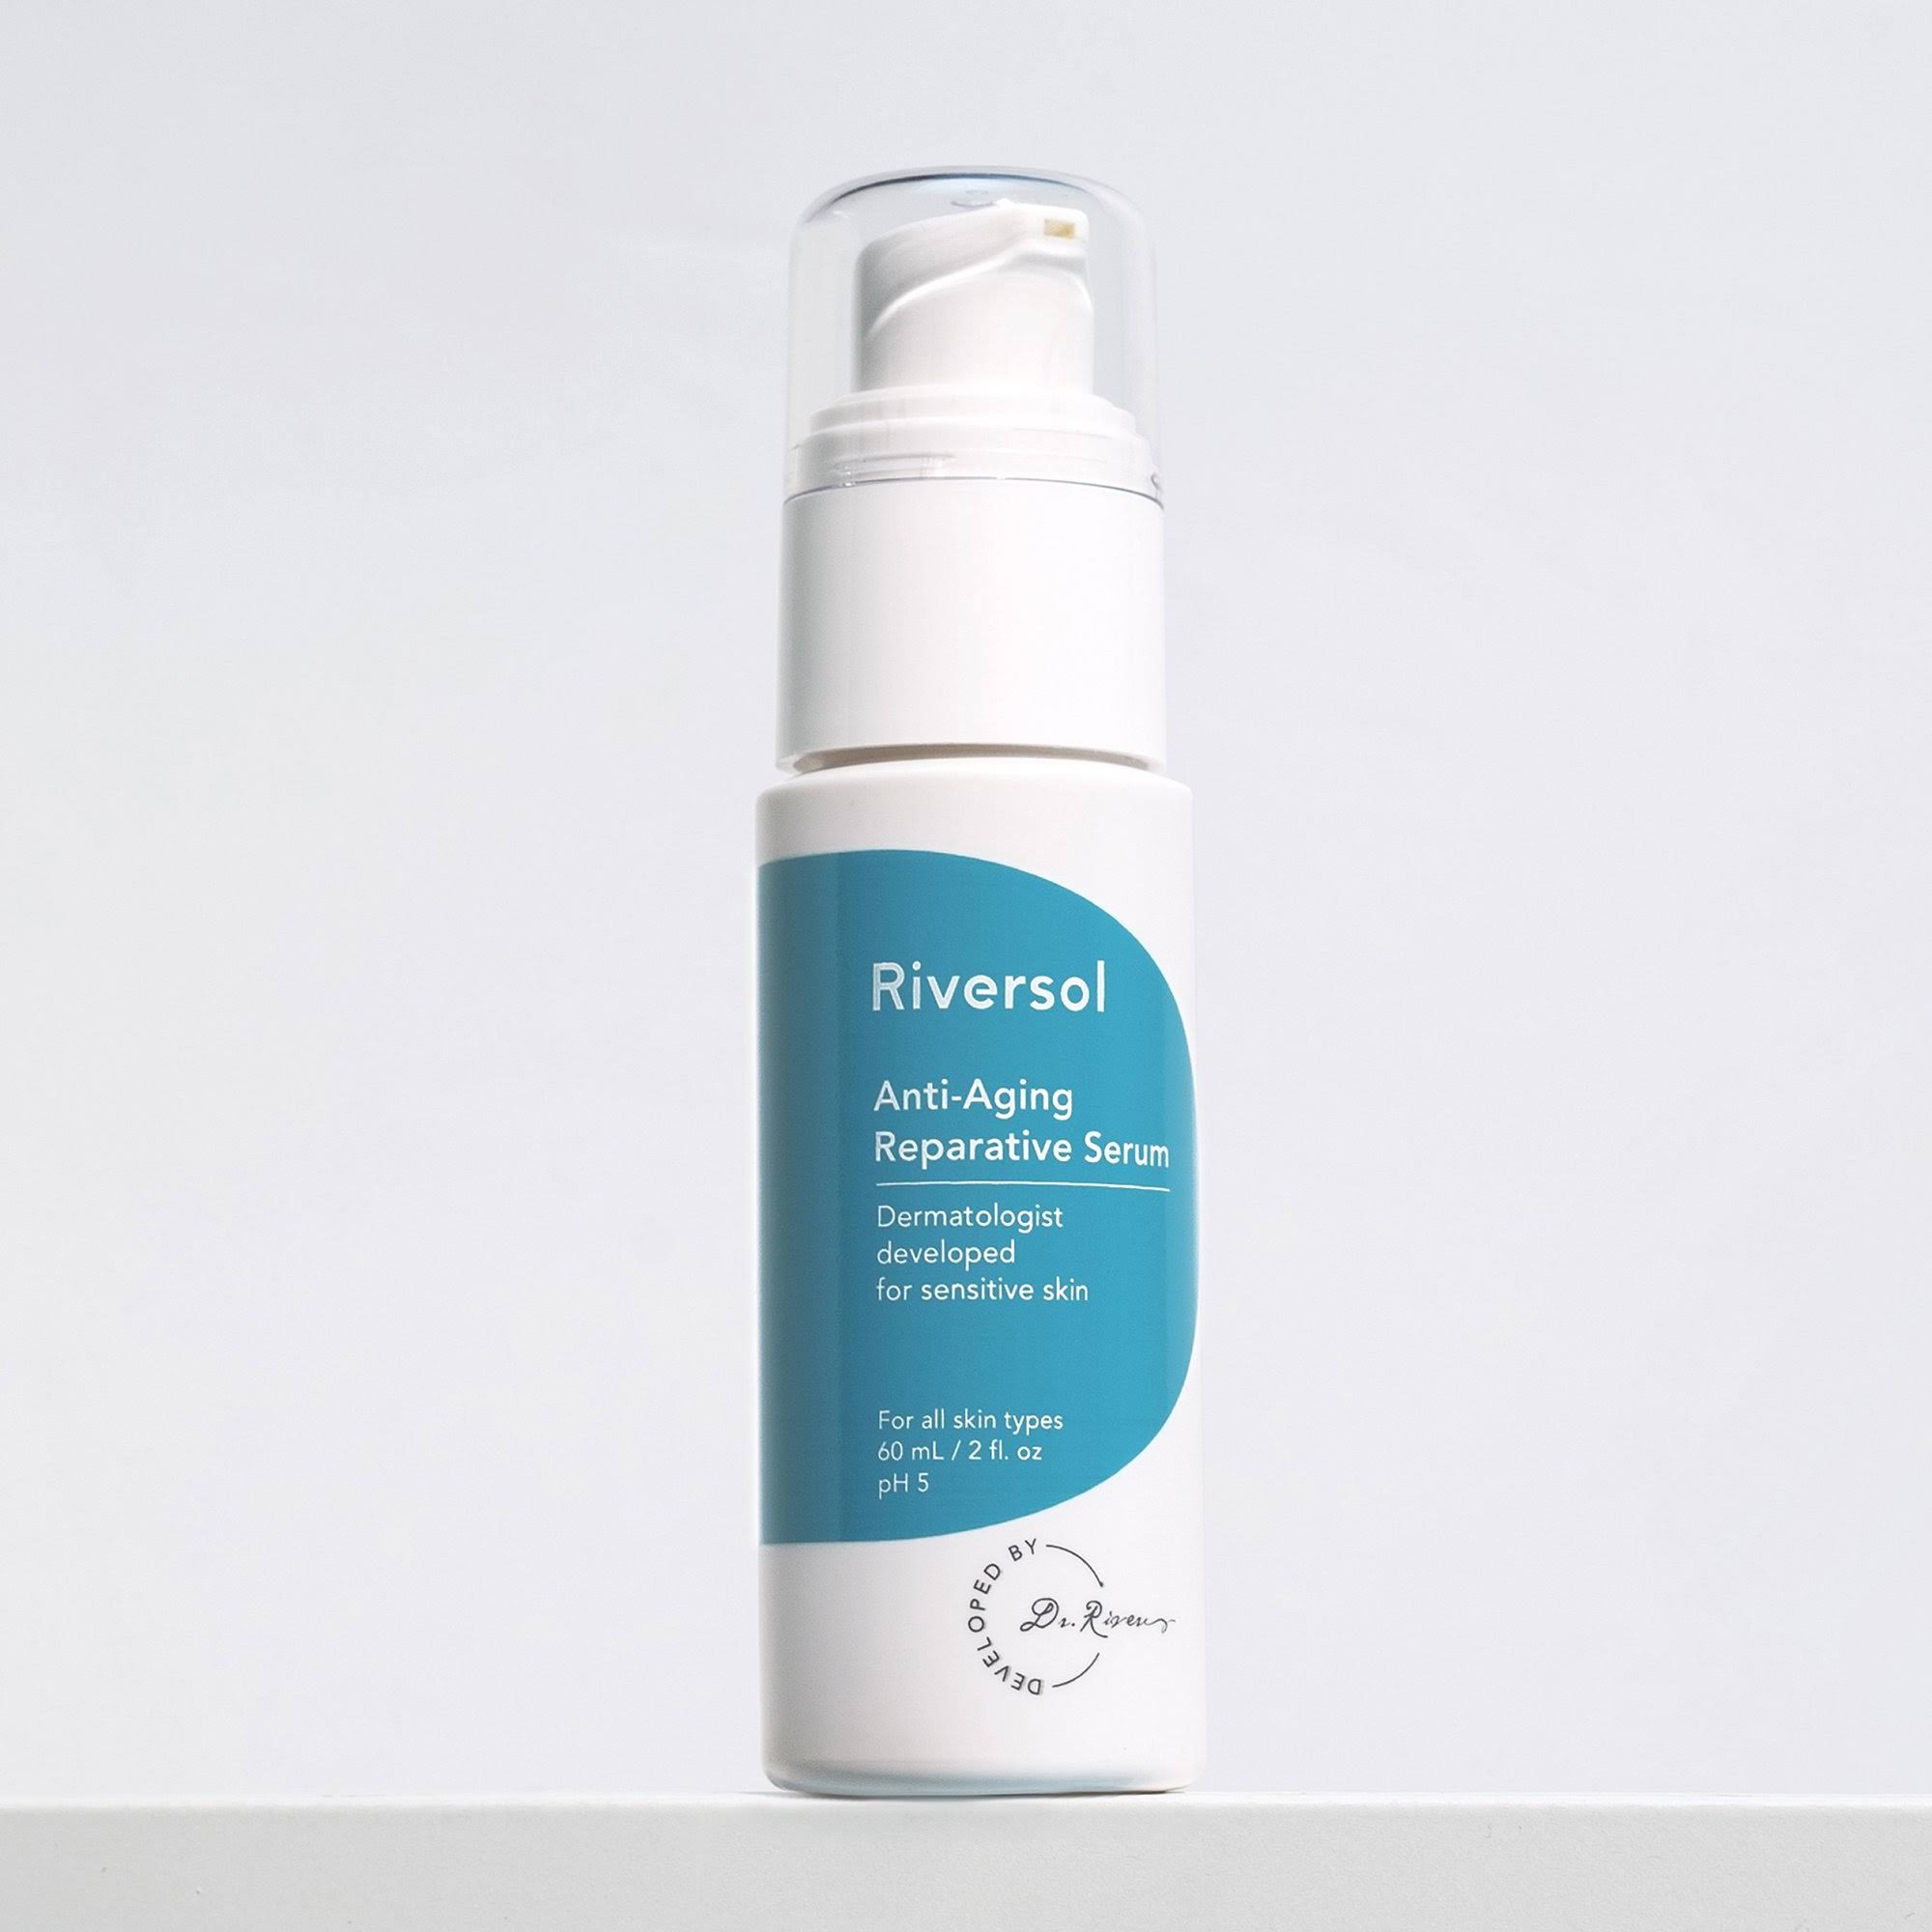 Riversol Anti-Aging Reparative Serum, 60ml/2 fl oz